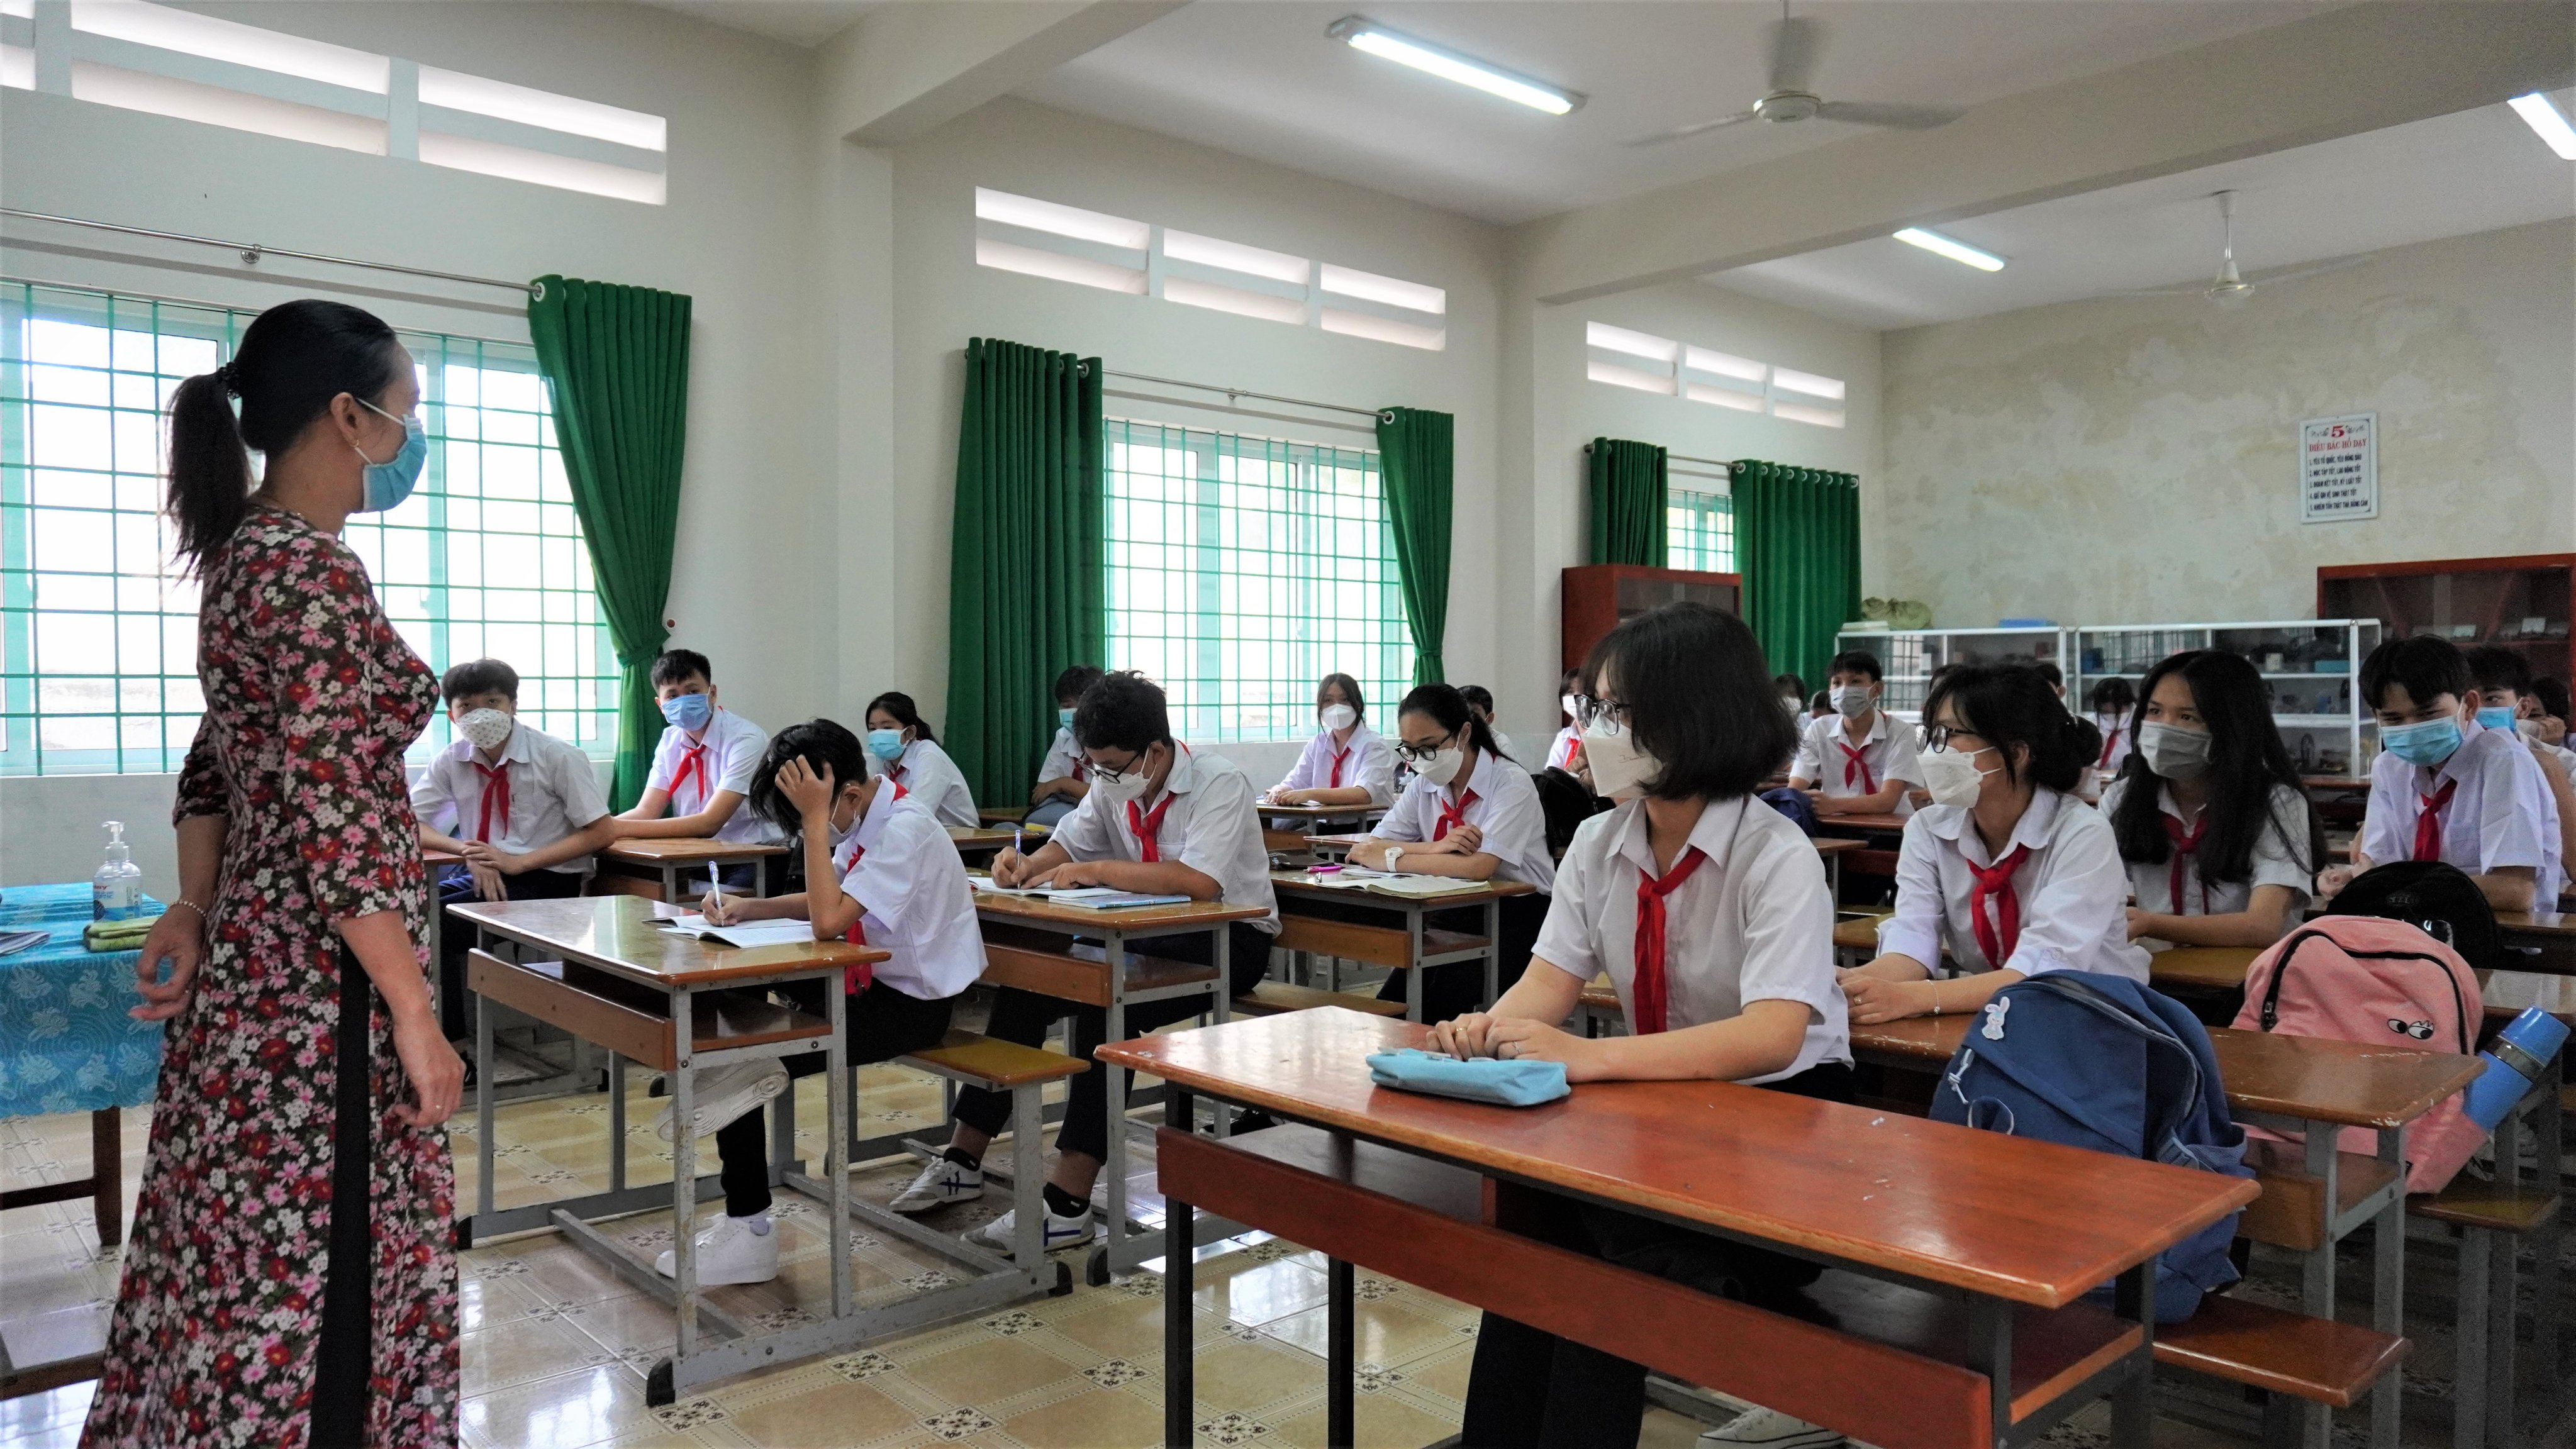 Trường THCS Mạc Đĩnh Chi (huyện Long Điền) nhắc nhở các quy định về công tác phòng, chống dịch cho HS. Ảnh: NHUNG HOA